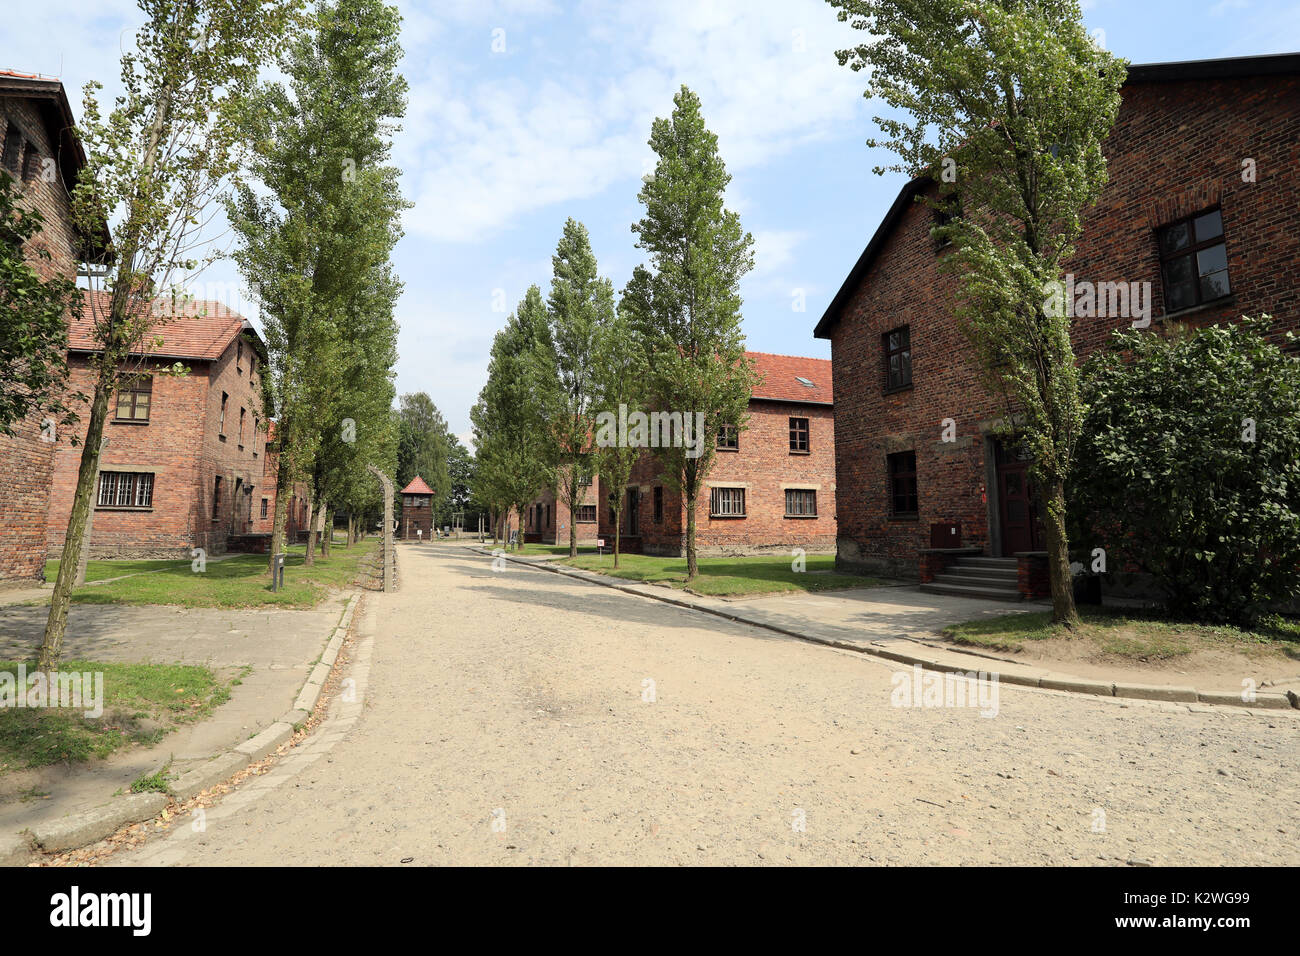 Bâtiments dans le camp de concentration nazi d'Auschwitz, près de la ville de Łódź, Pologne, photographié le 25 août 2017. Banque D'Images